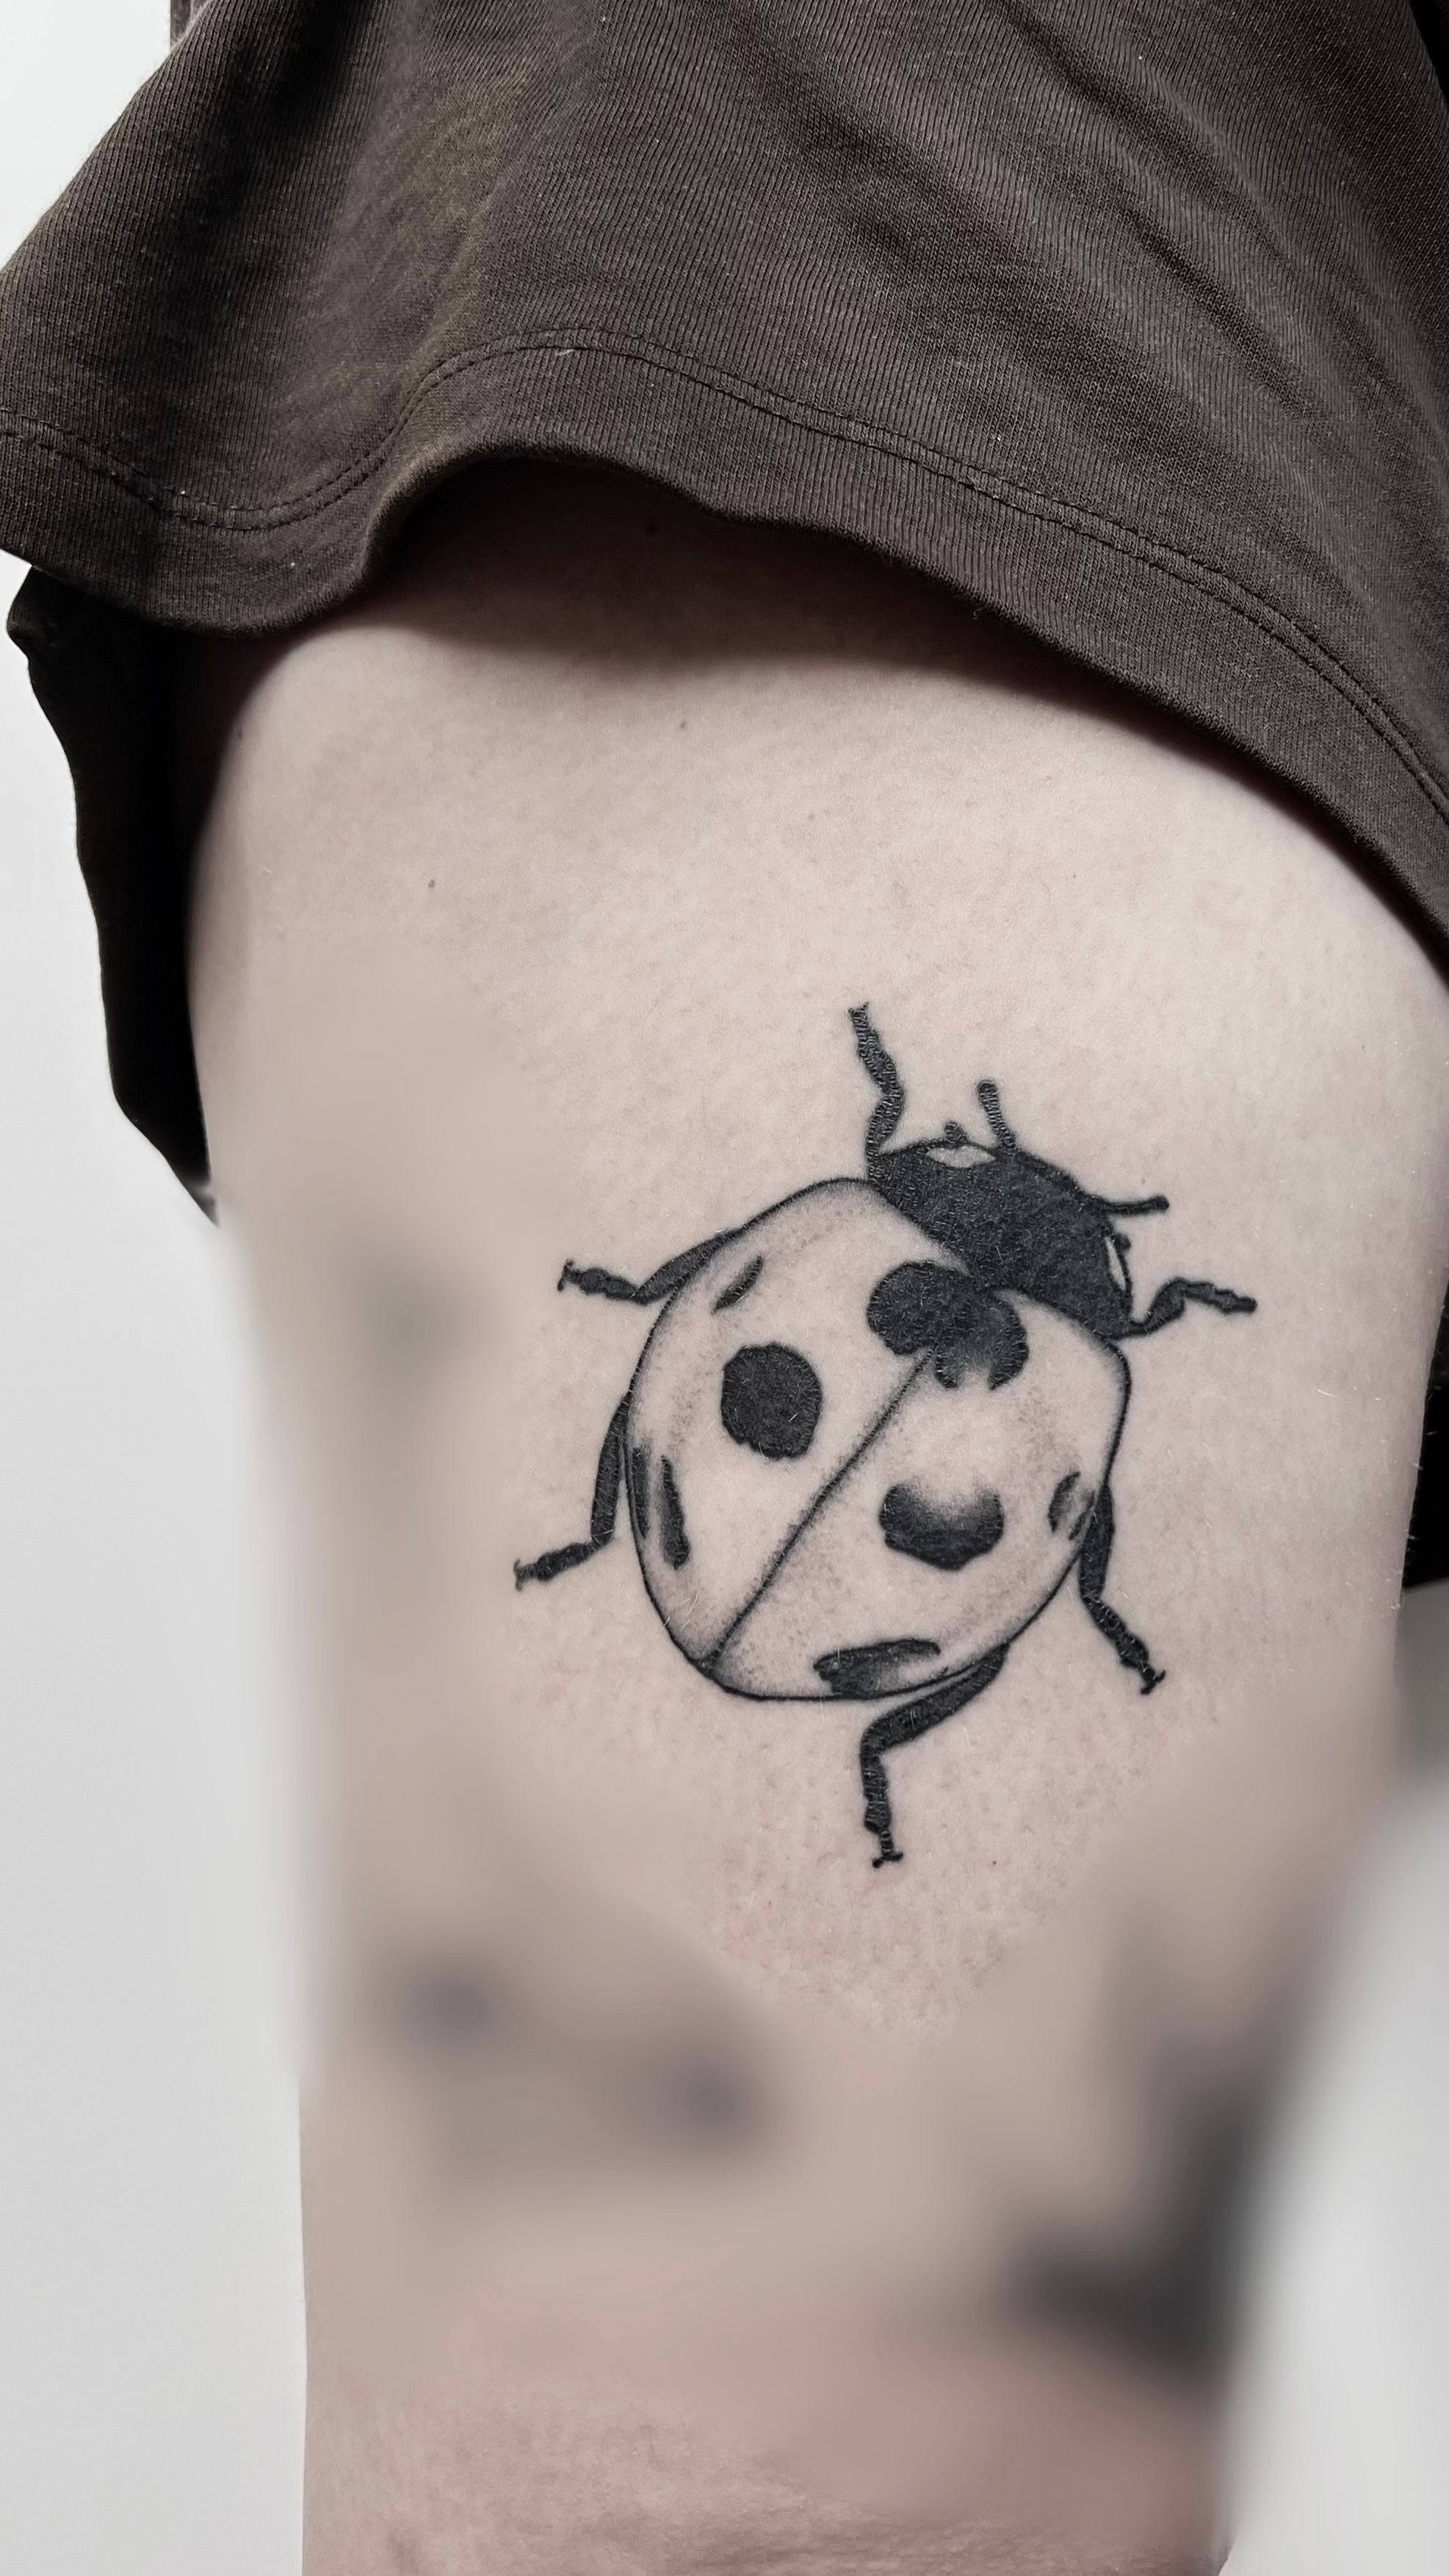 Ladybug Tattoos | Tattoofanblog